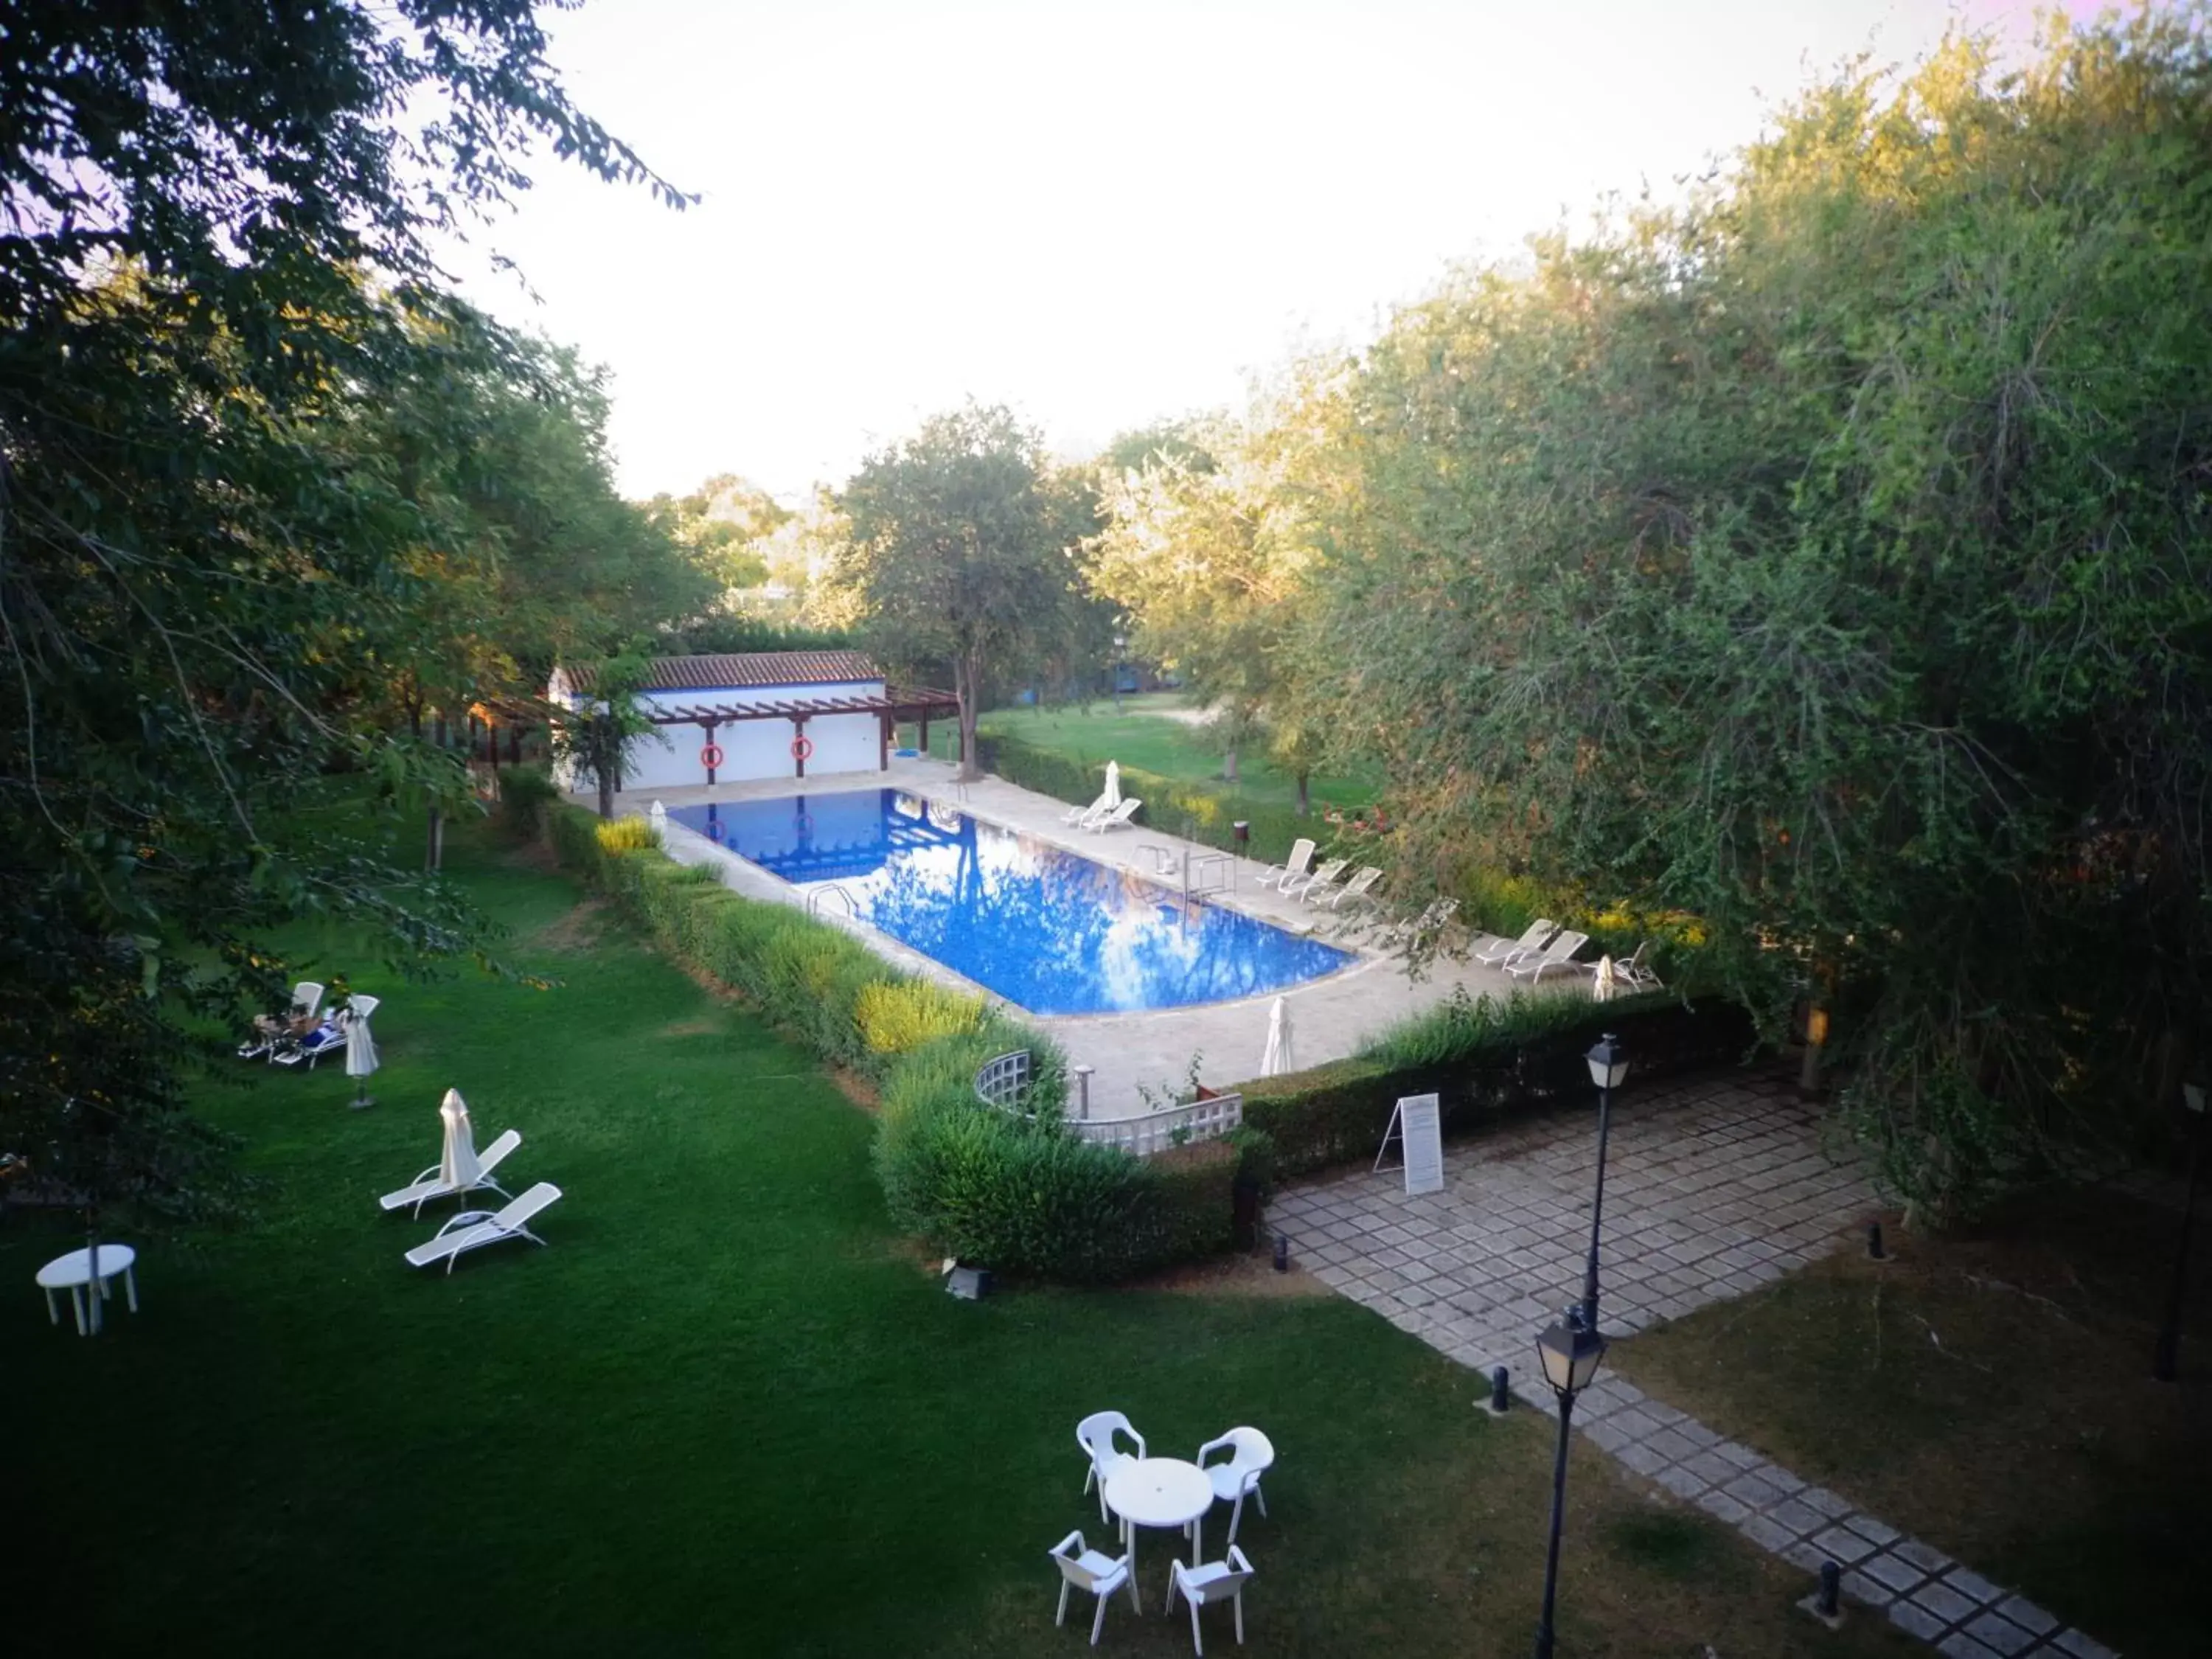 Swimming pool, Pool View in Parador de Manzanares